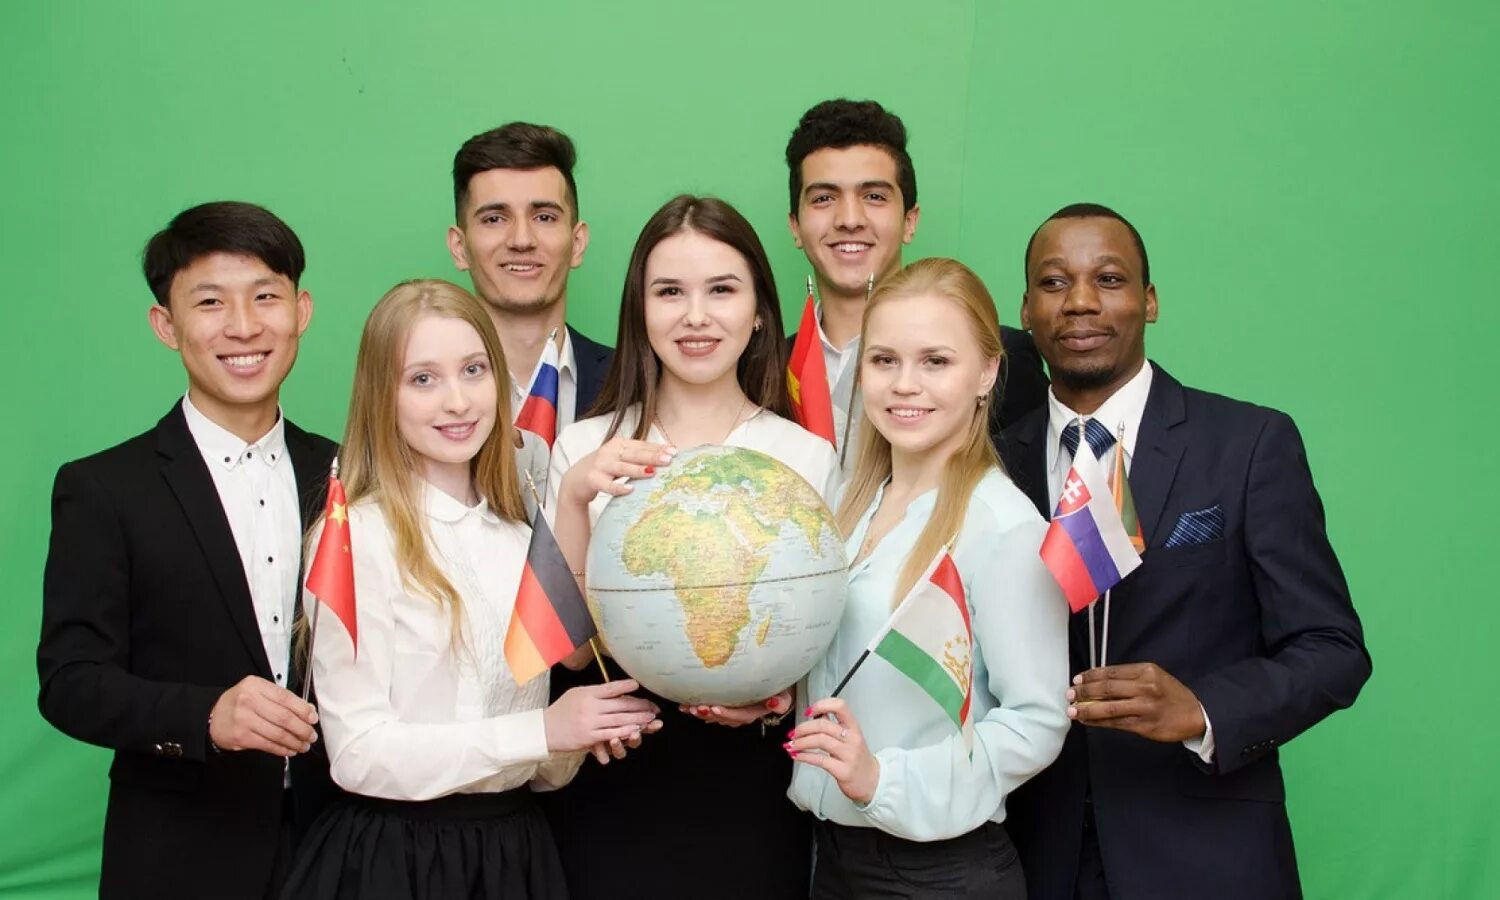 Иностранные языки. Студенты из разных стран. Студенты с глобусом. Студенты иностранцы с глобусом.